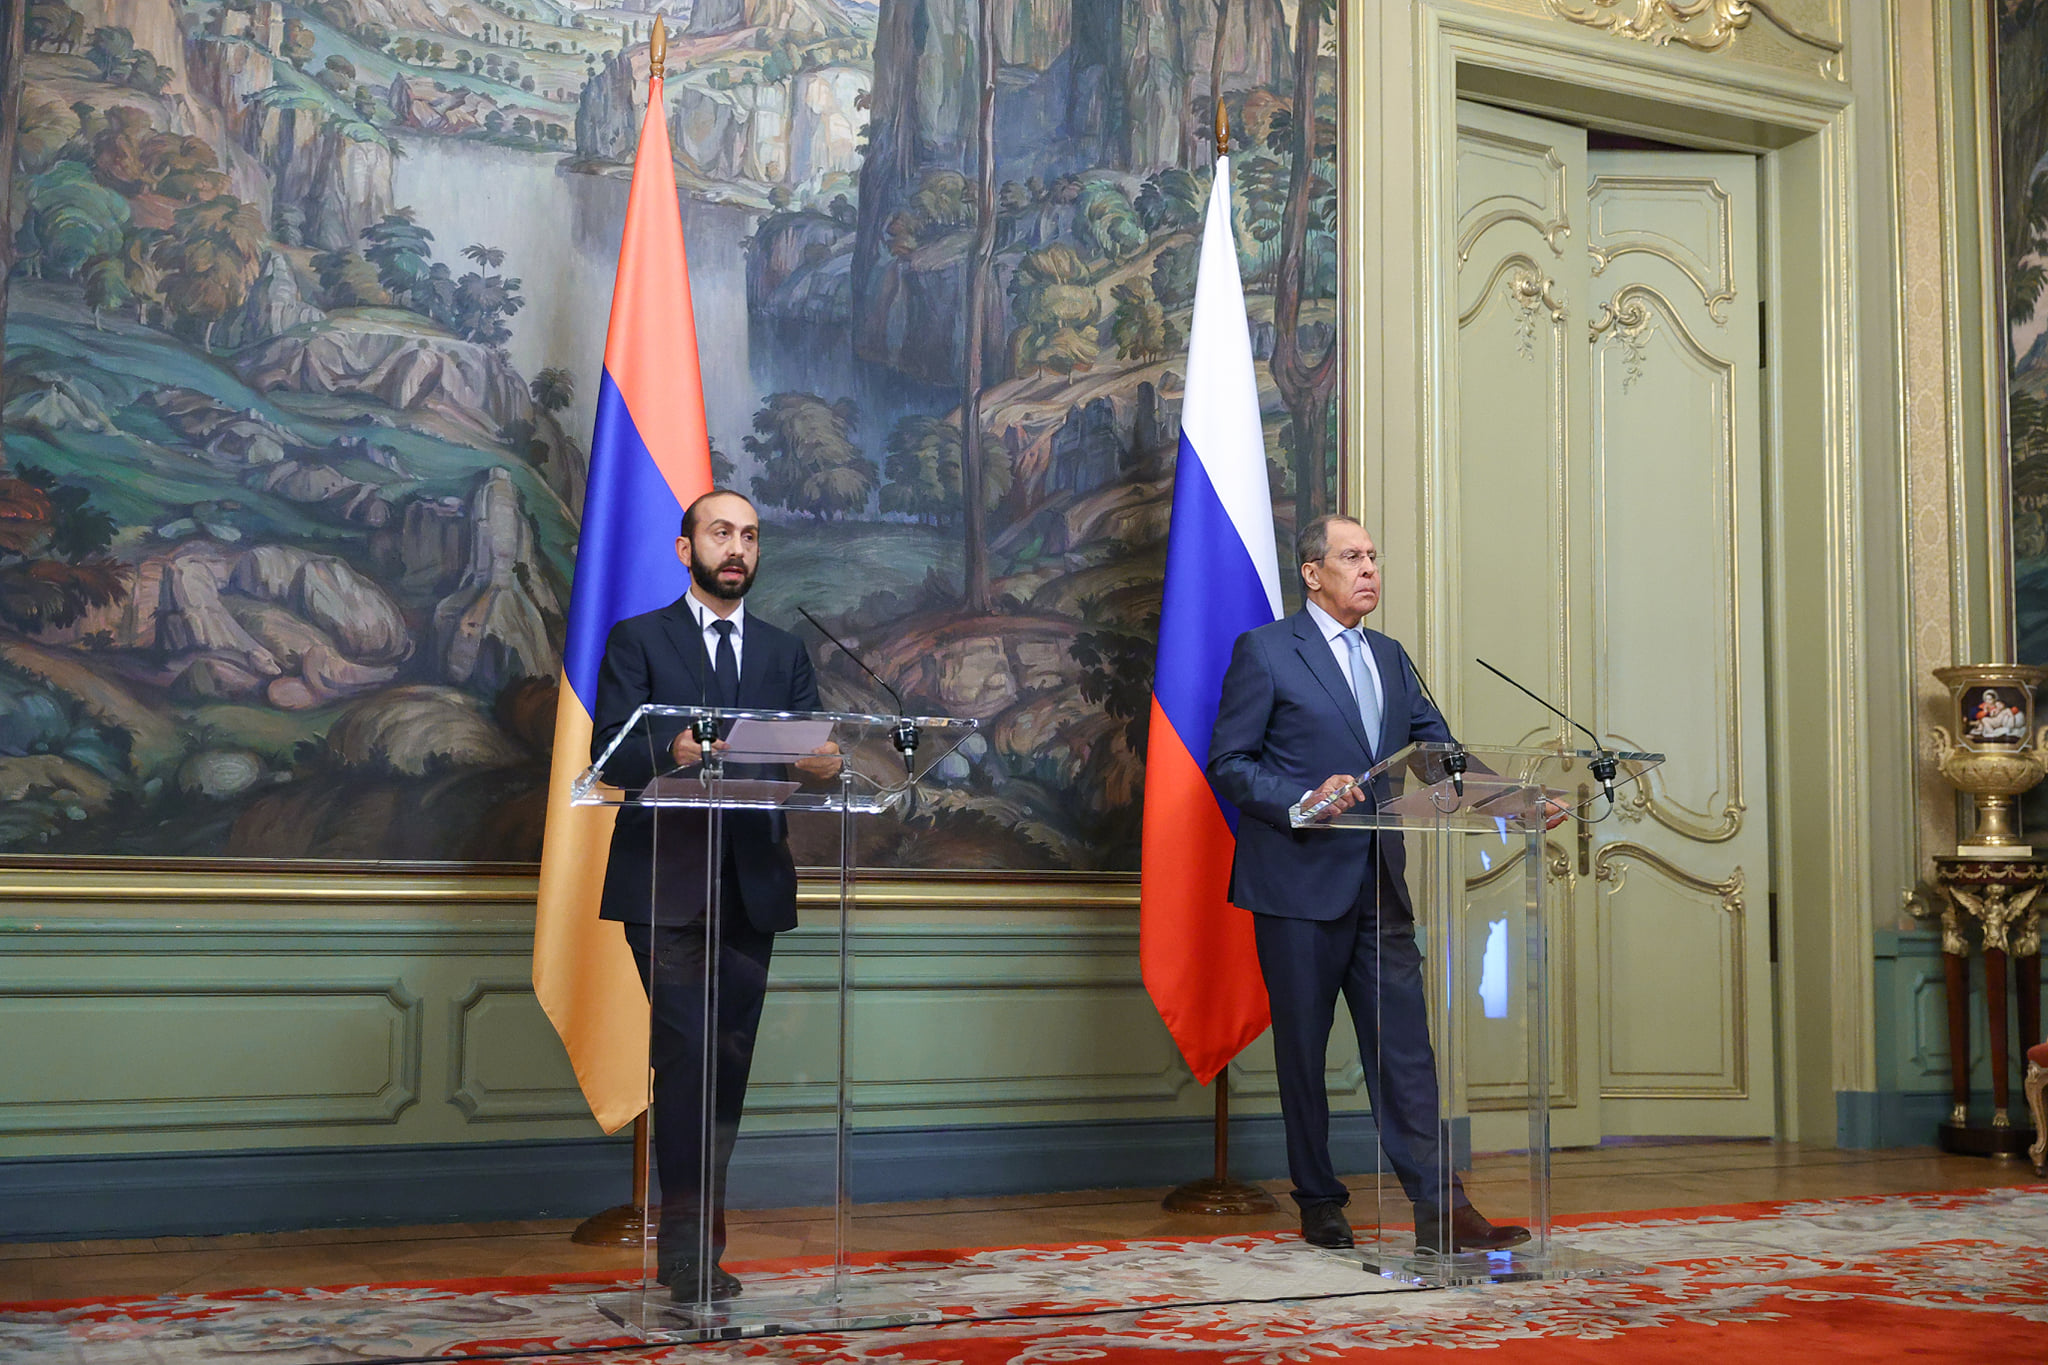 Հայաստանի և Ռուսաստանի արտգործնախարարները քննարկել են սահմանազատումը, ապաշրջափակումը և այլ հարցեր